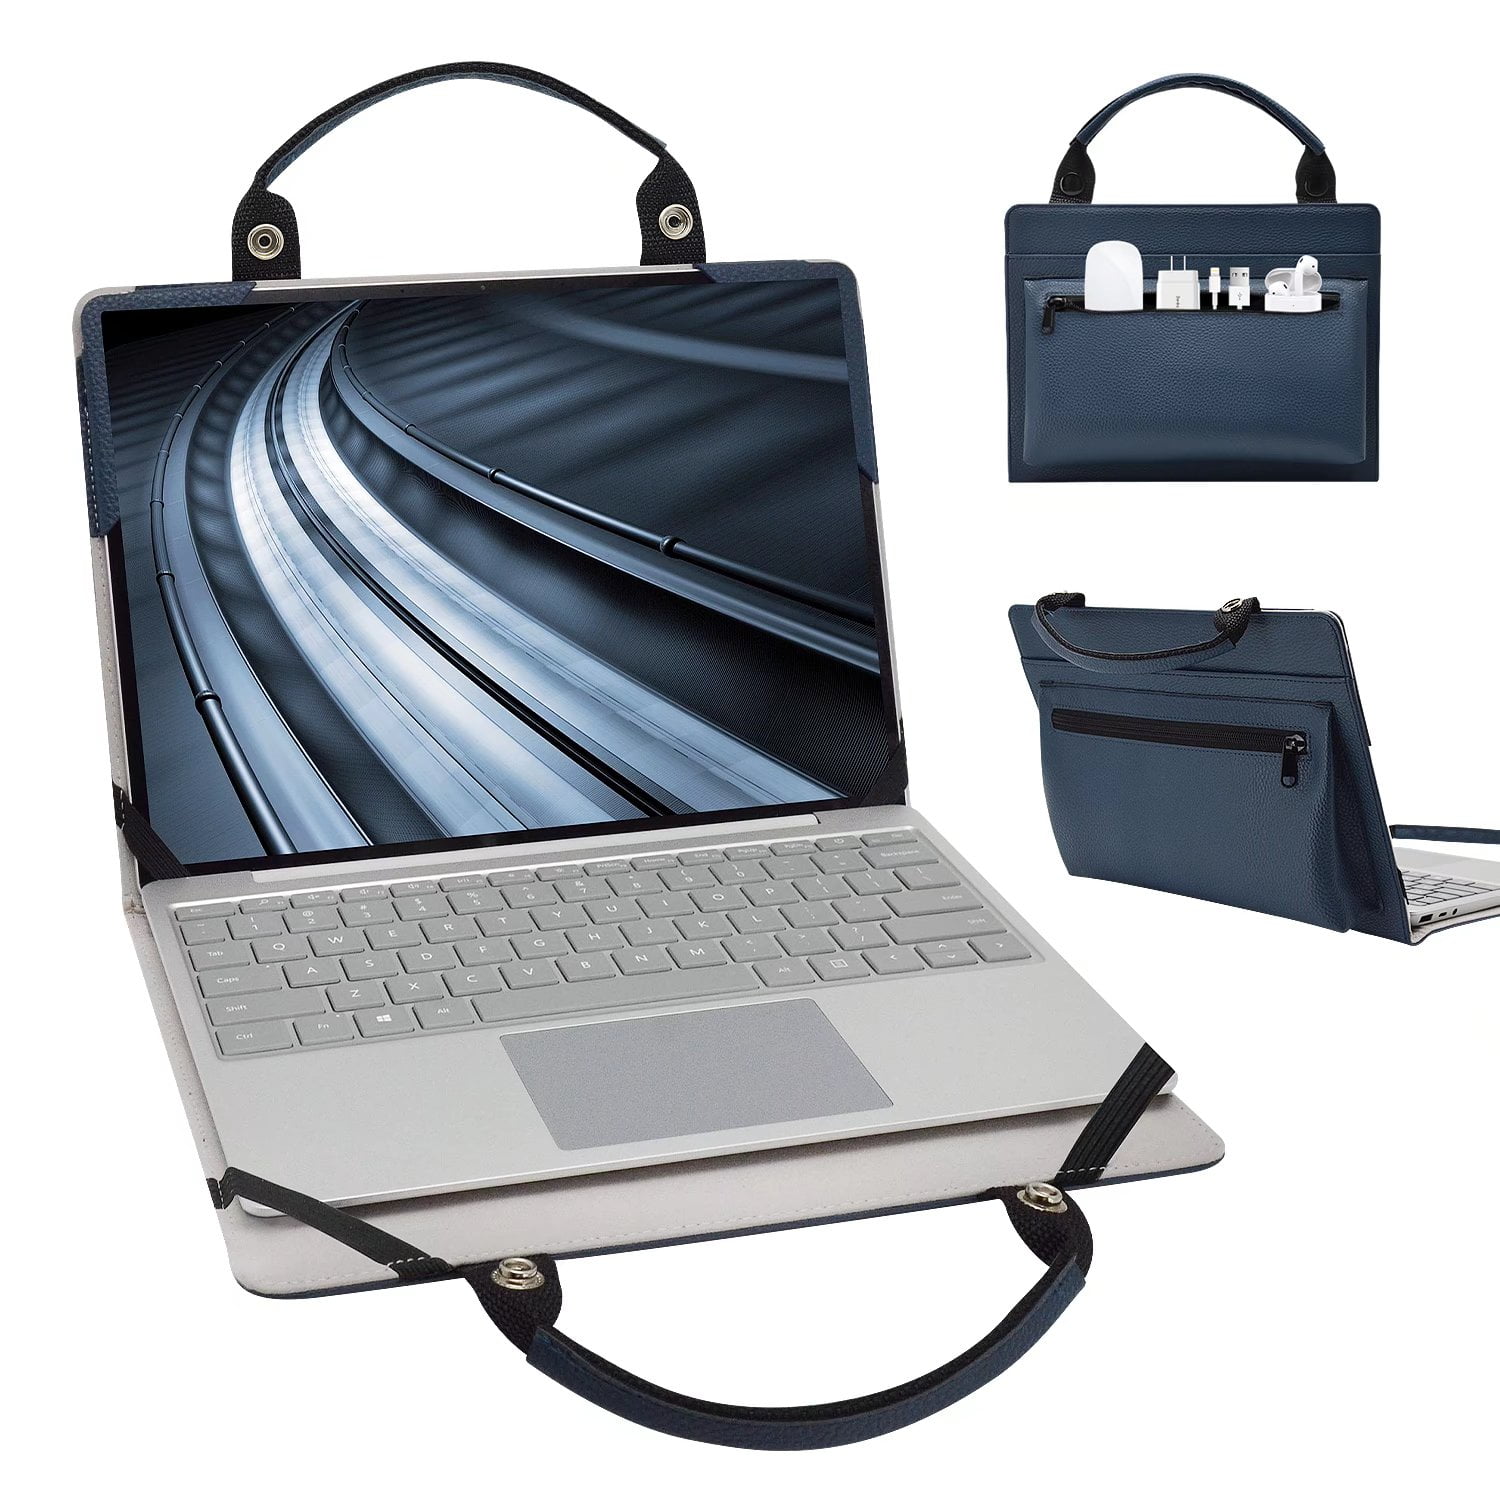 15" 15.6" Laptop Computer Sleeve Case Bag w Hidden Handle 311 